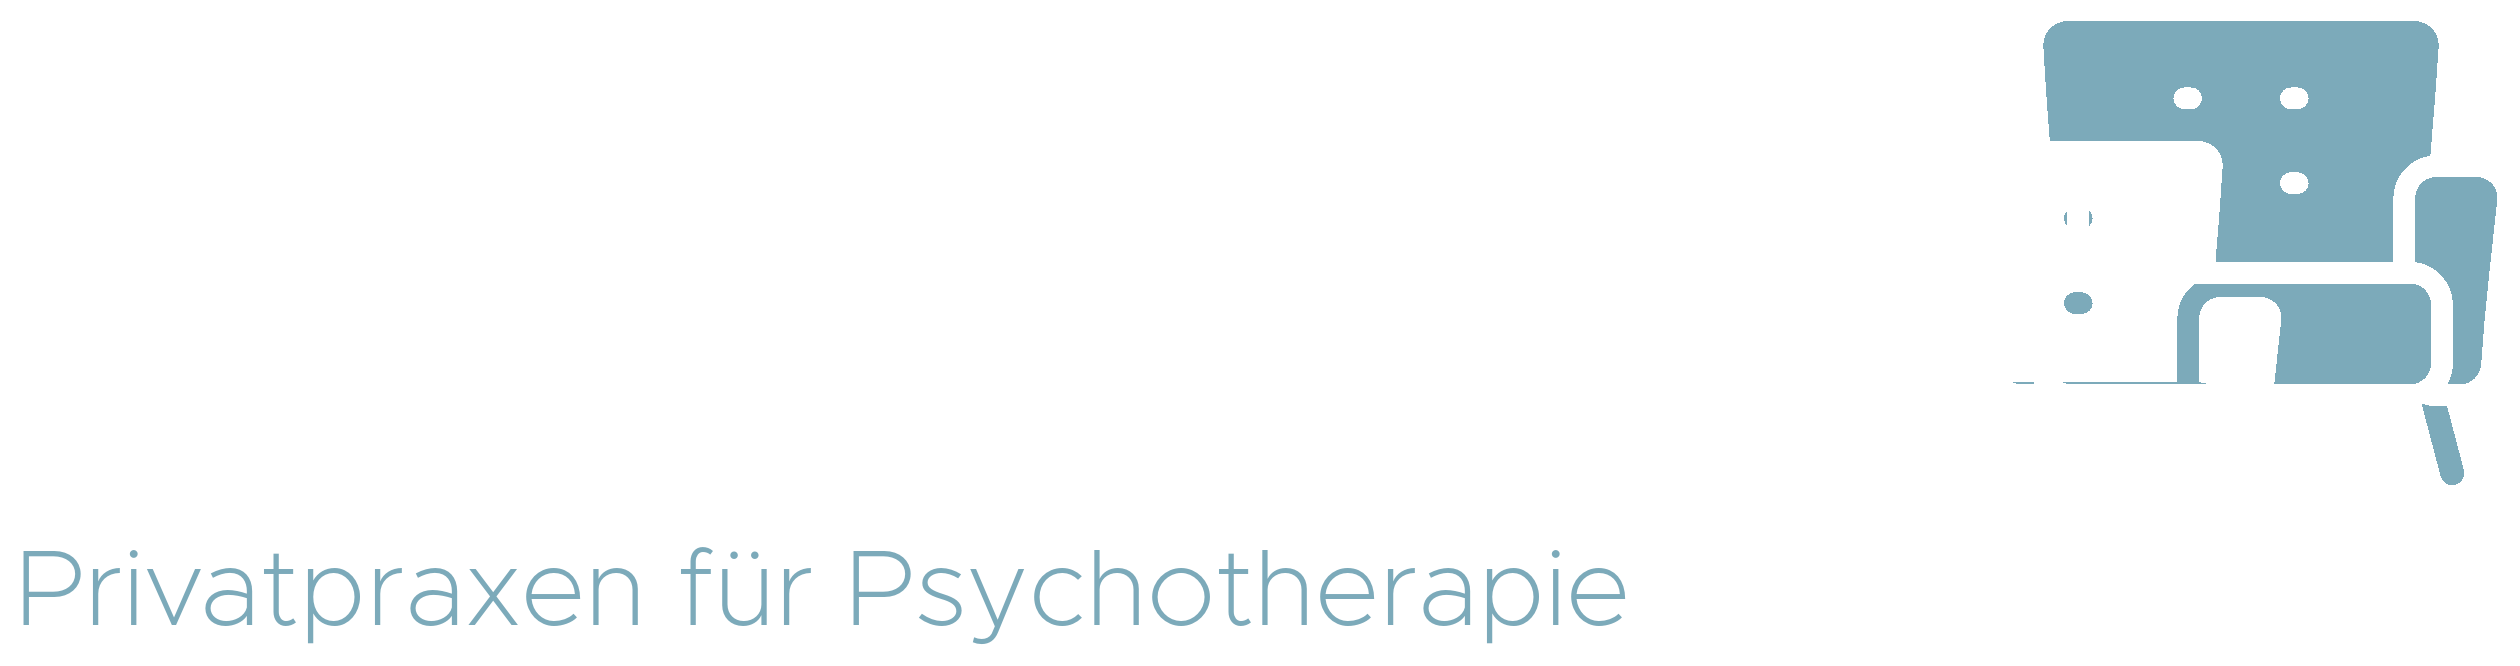 Logo der Praxisgemeinschaft Lingen & Staab